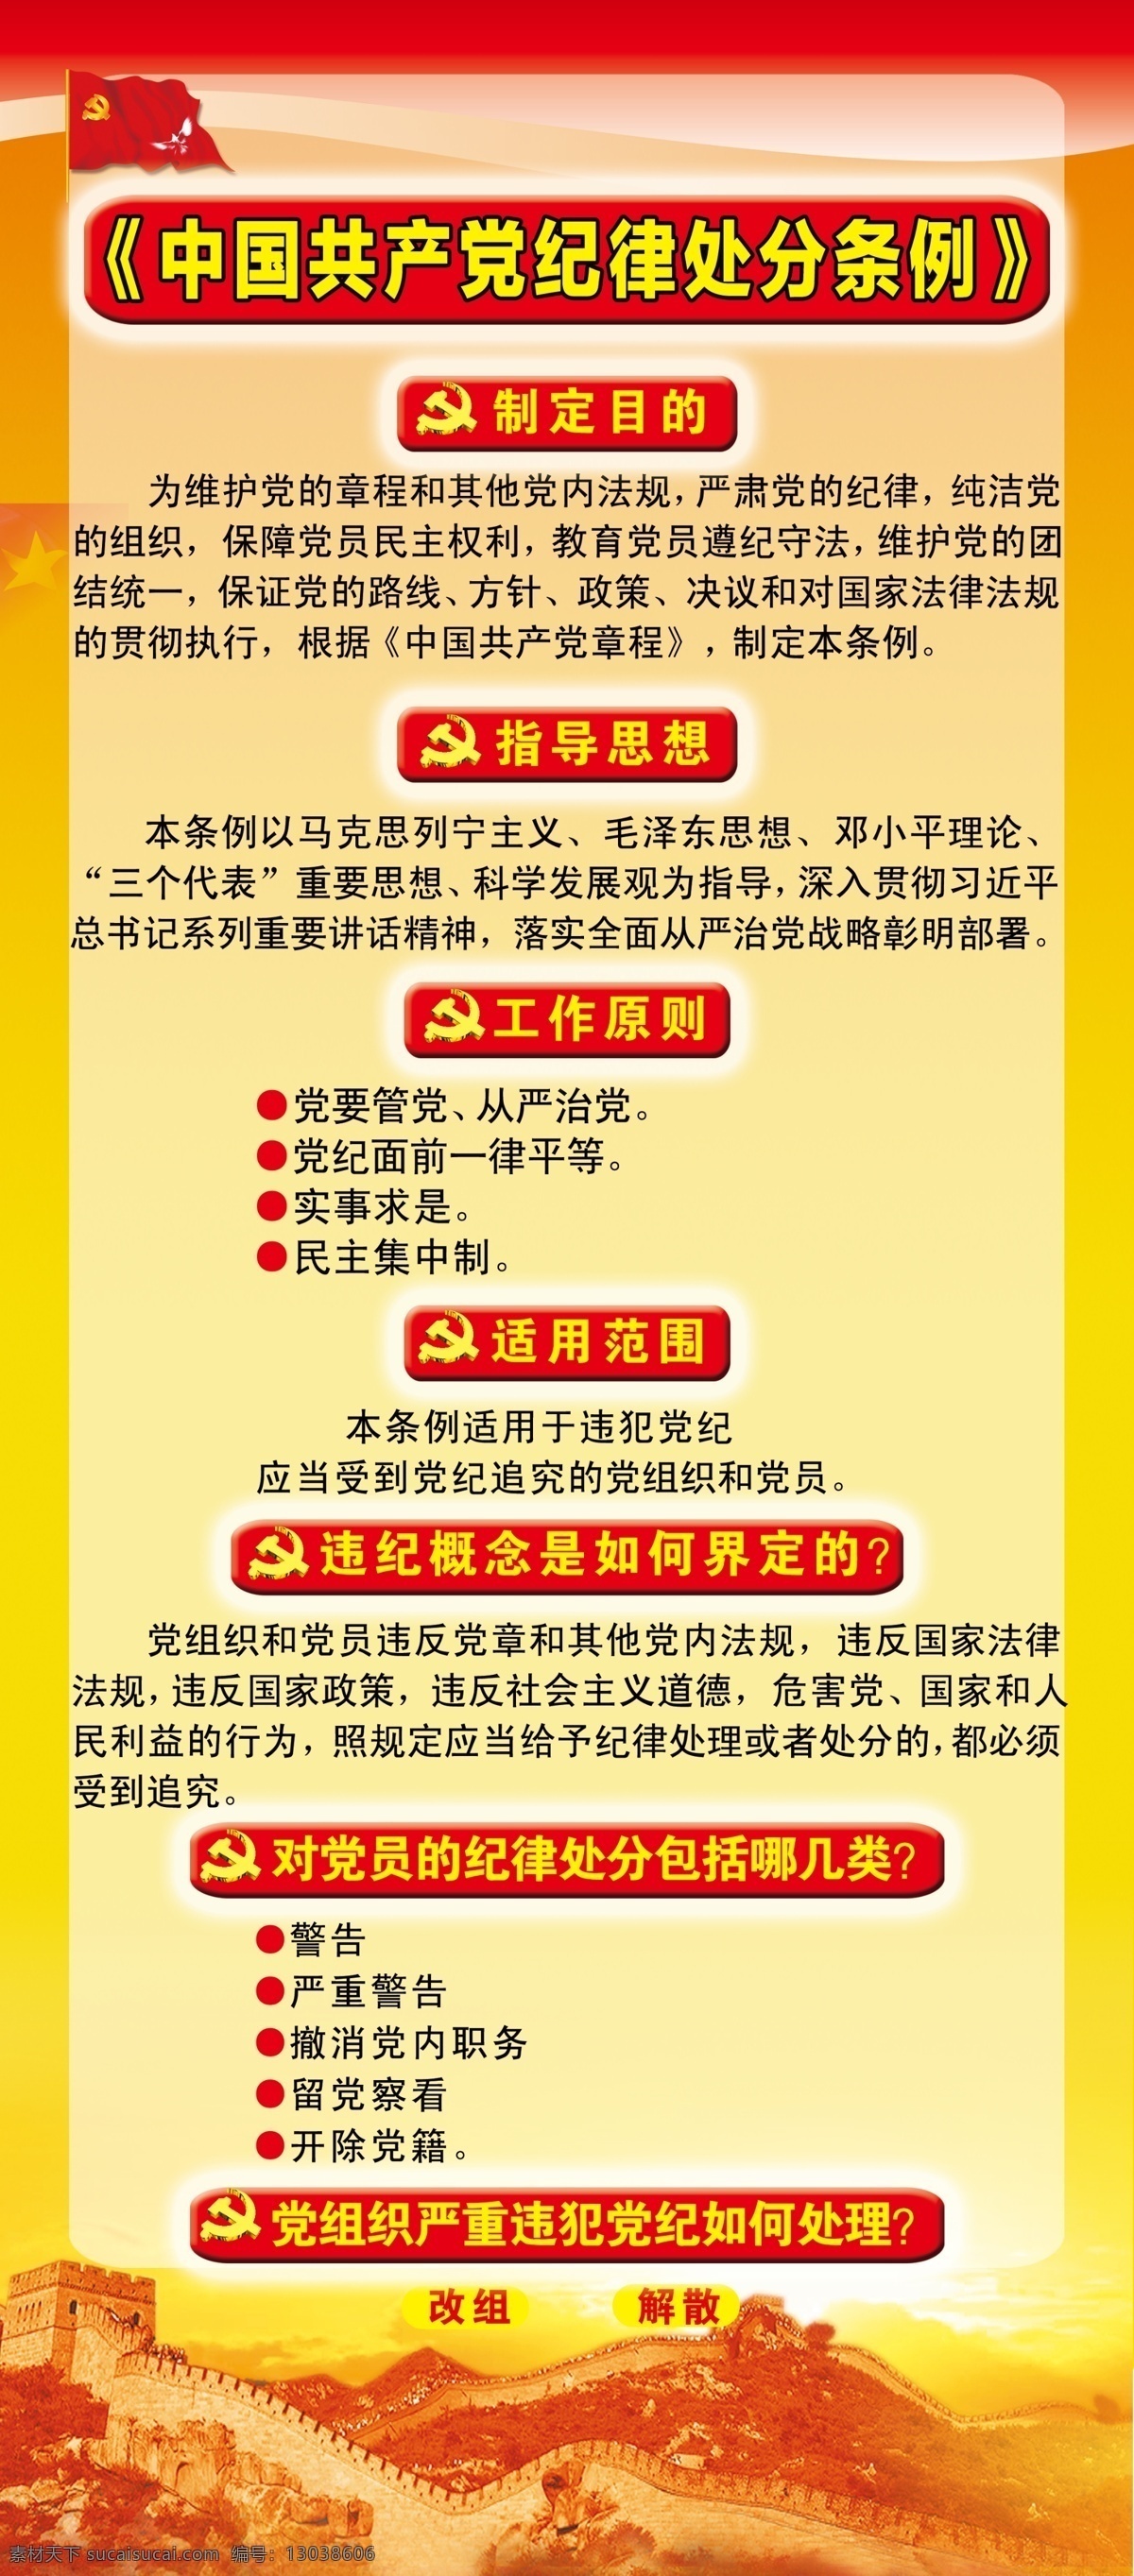 中国共产党 纪律 处分 条例 共产党 指导思想 适用范围 工作原则 党员纪律处分 展板模板